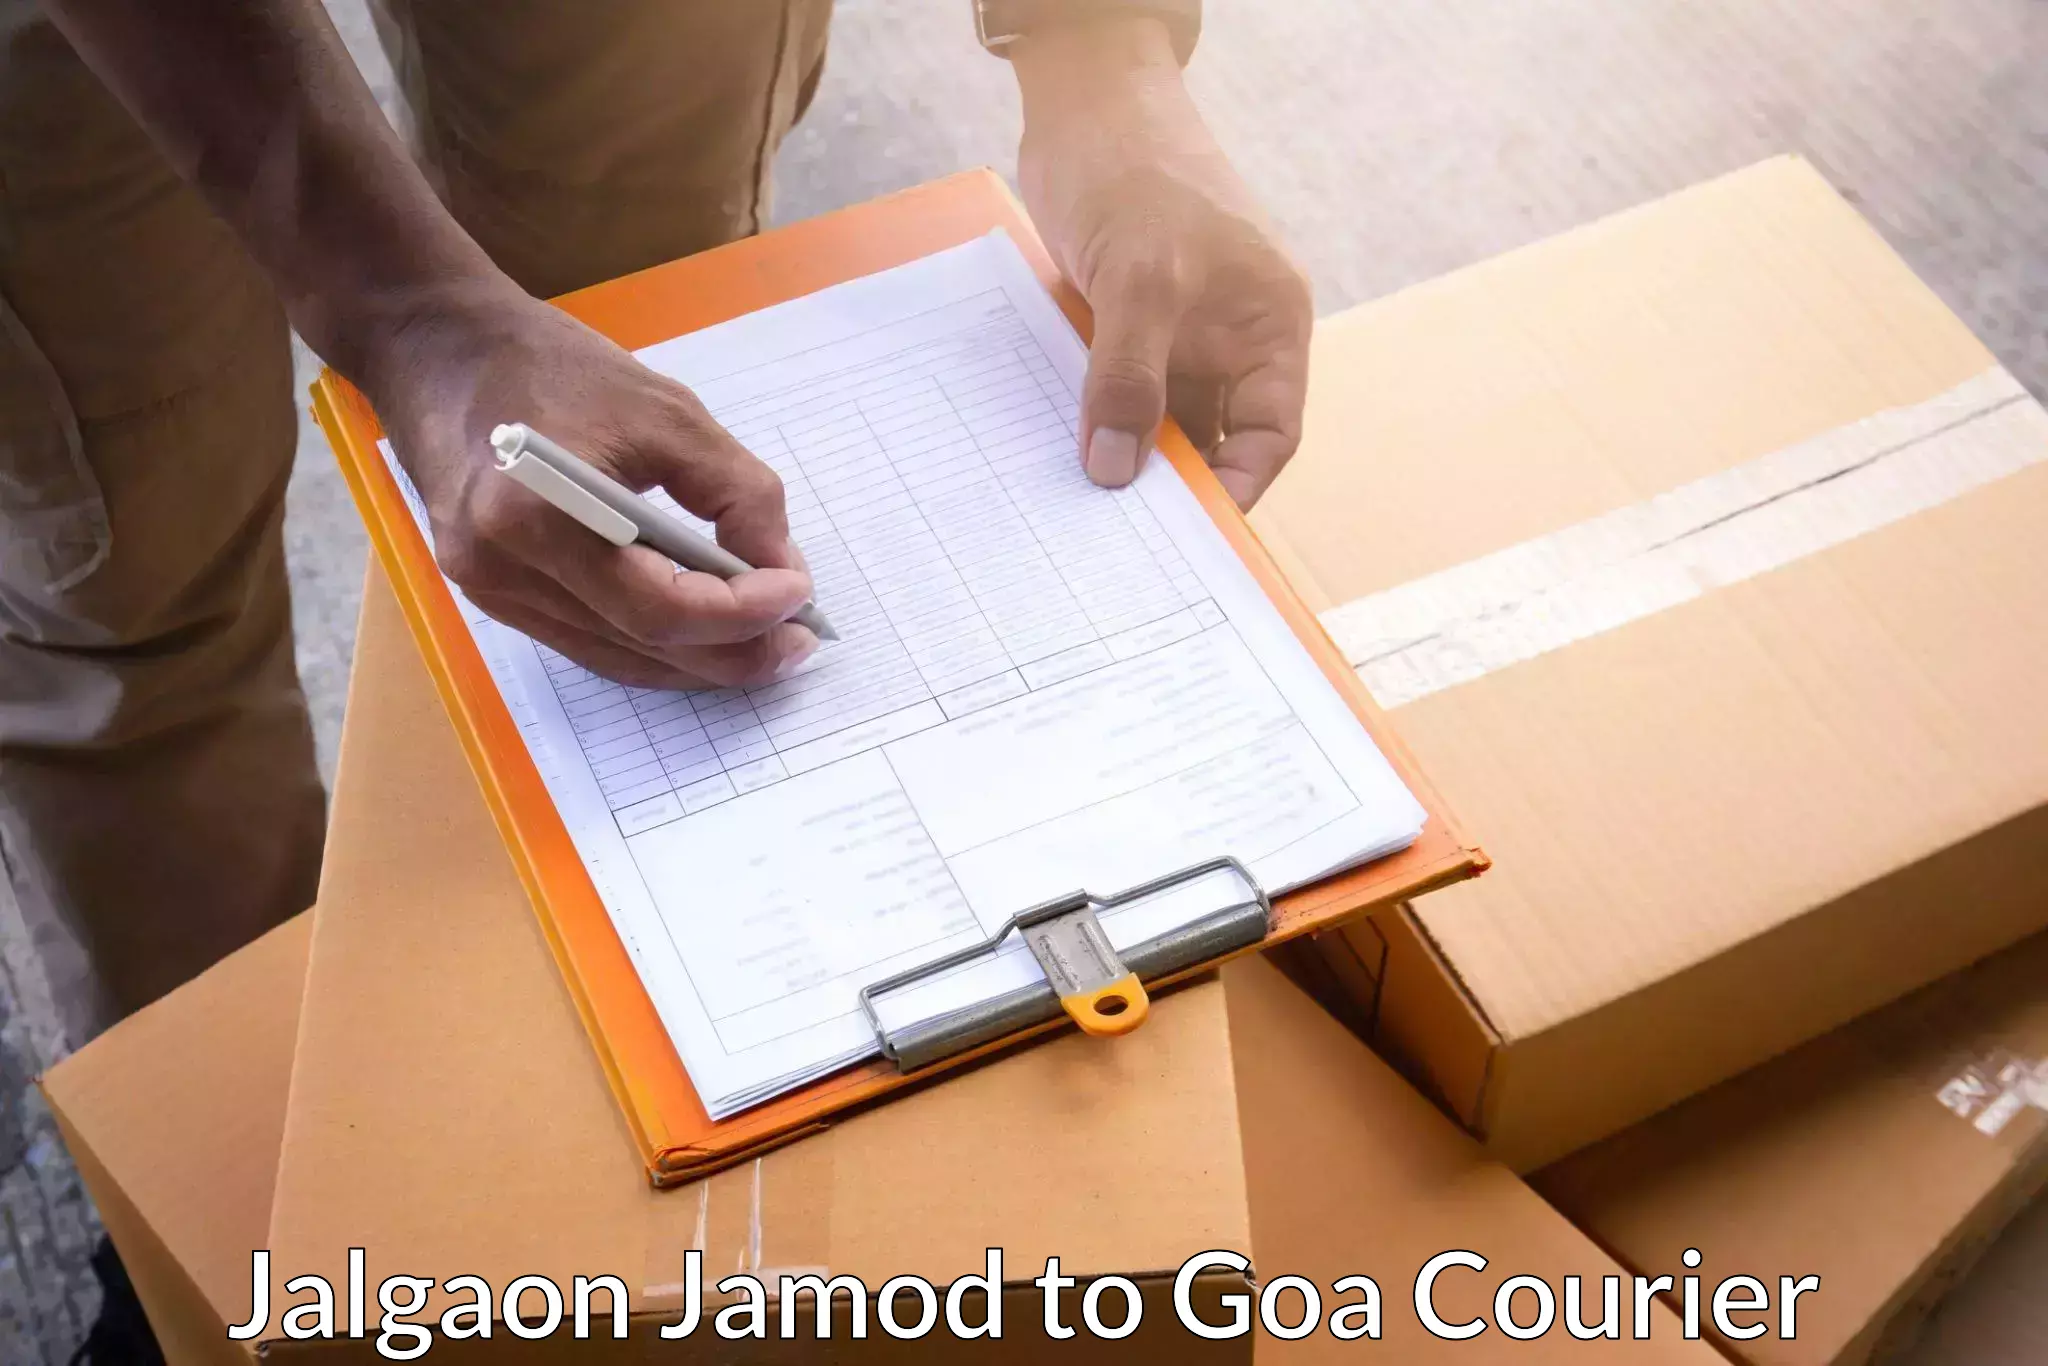 Courier insurance Jalgaon Jamod to Panaji